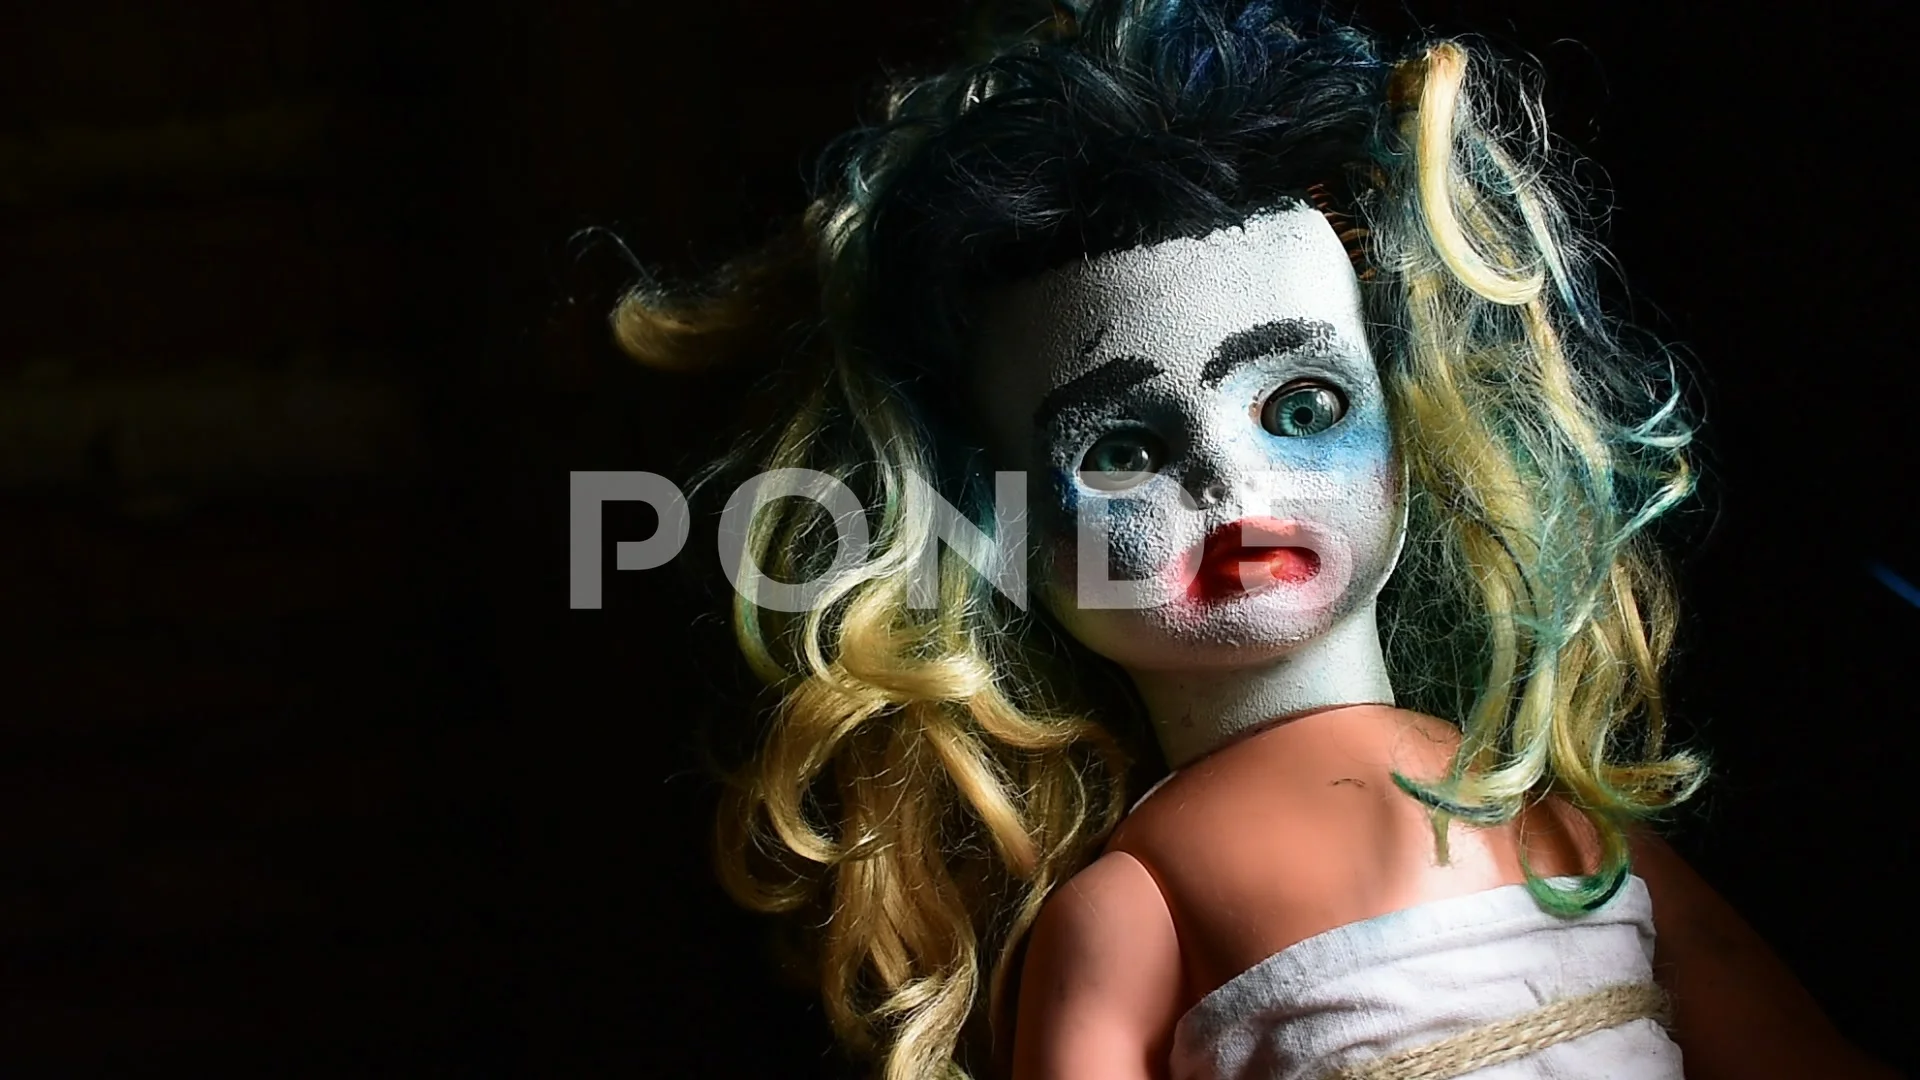 scary barbie dolls